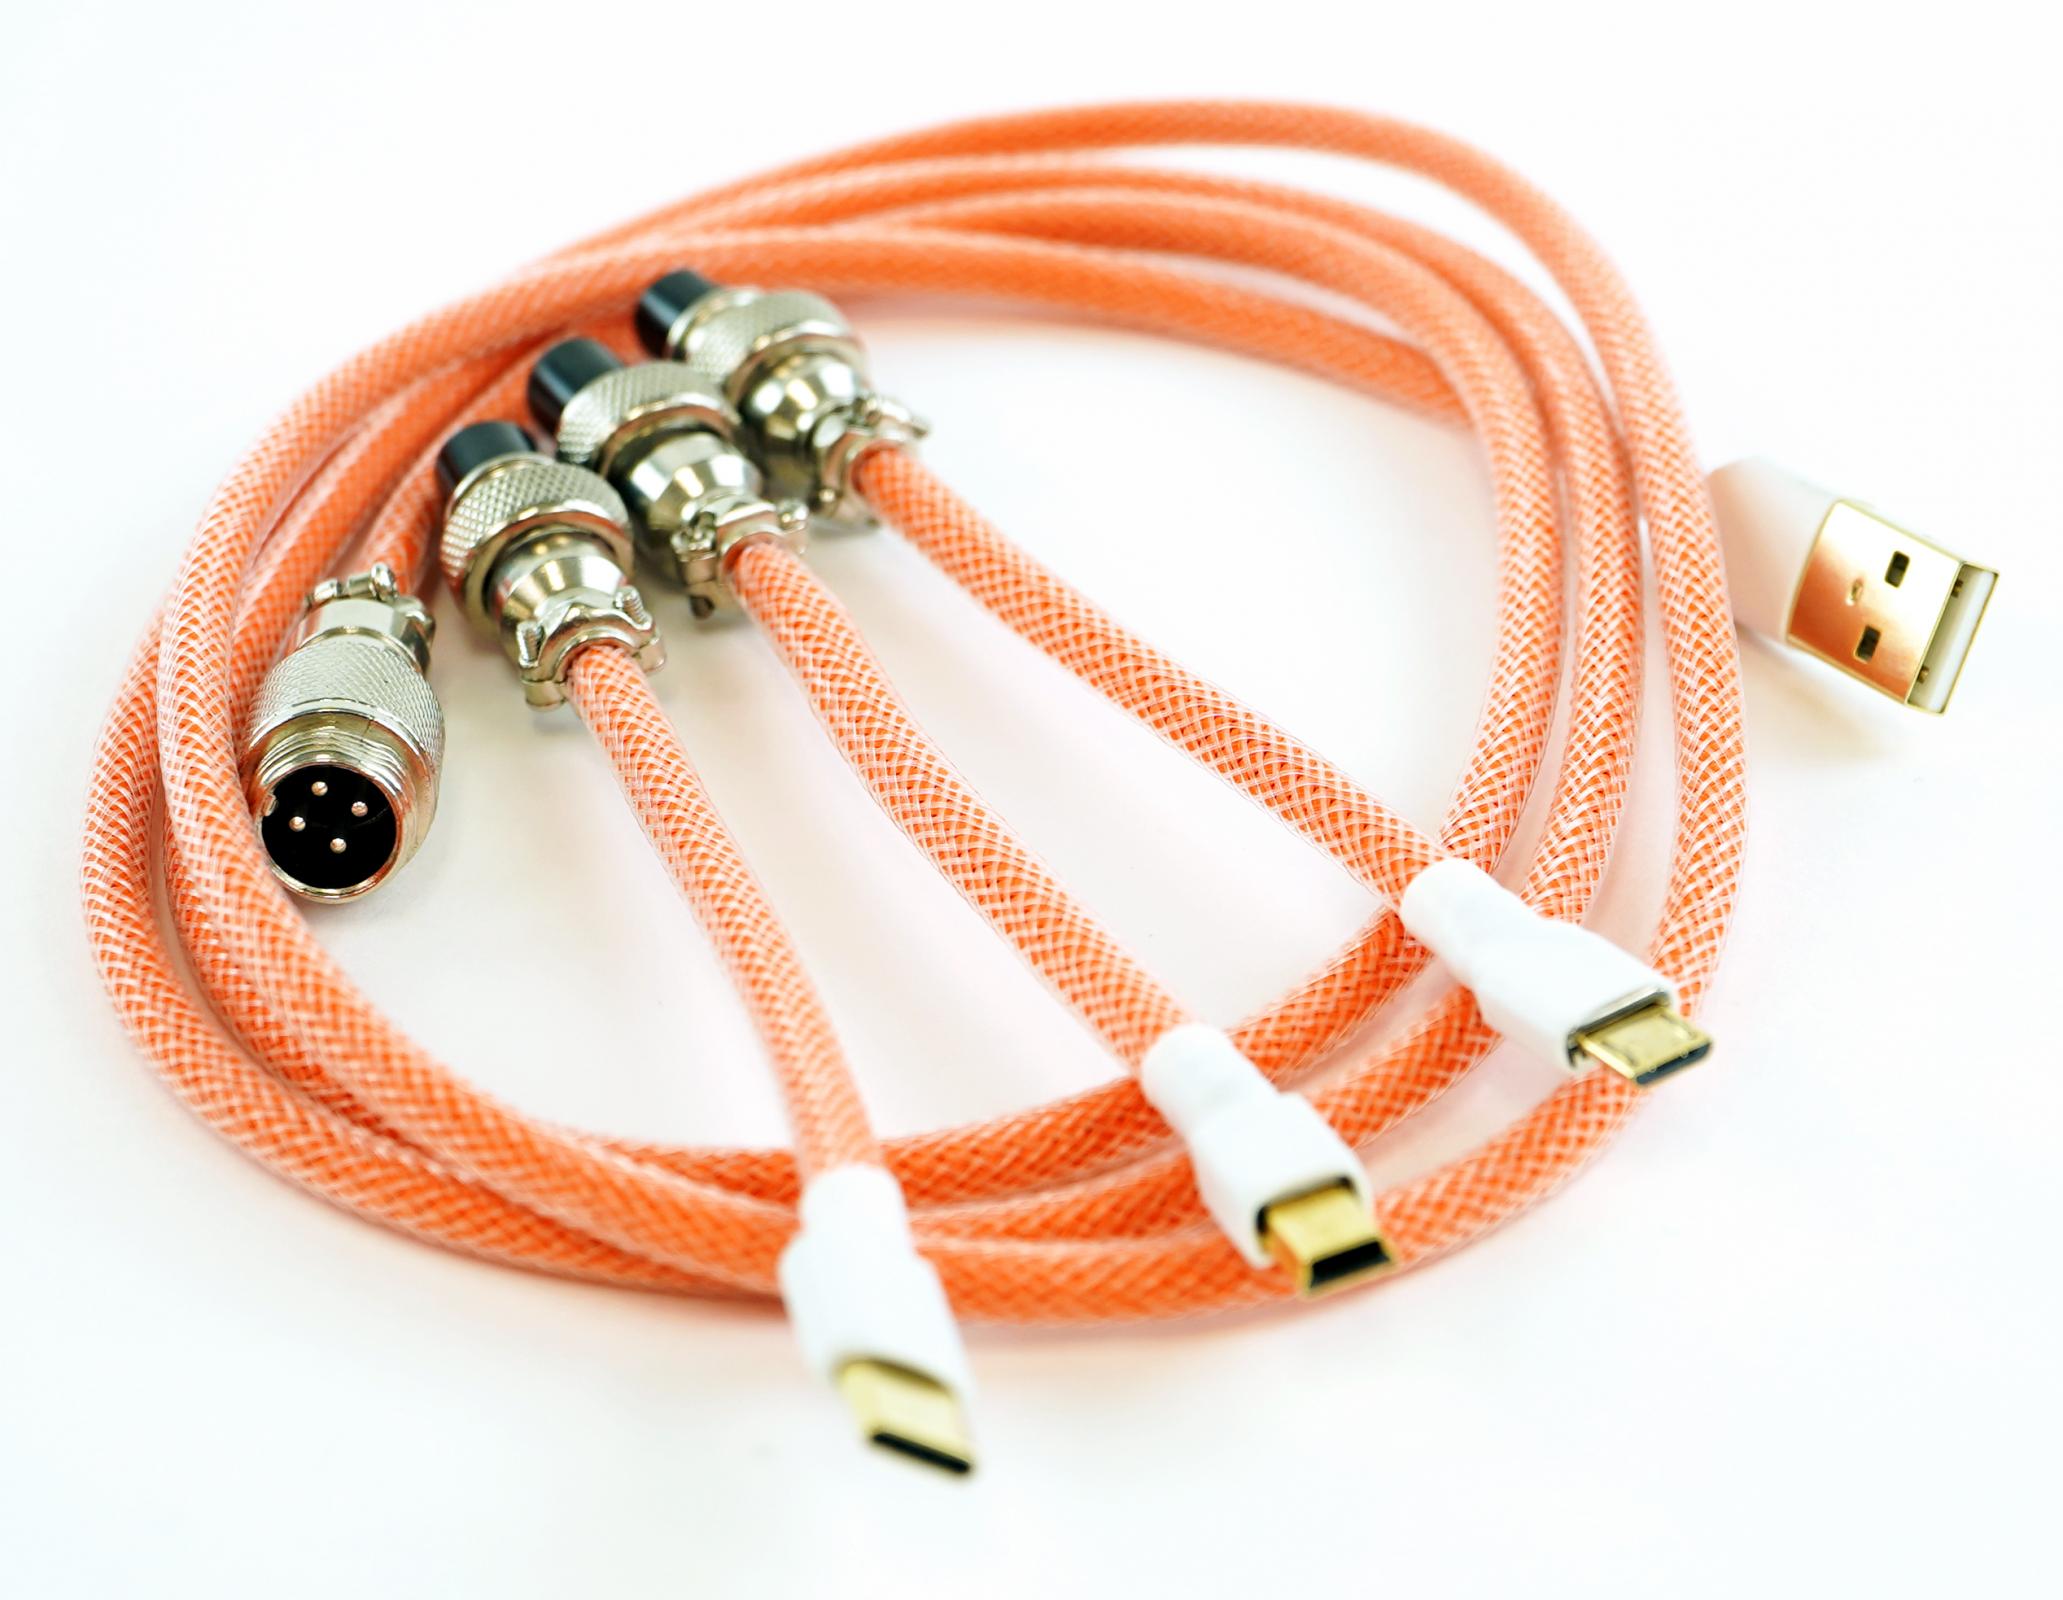 Kraken Orange Sleeved Aviator Universal USB Keyboard Cable MK07KQIEZR |39565|